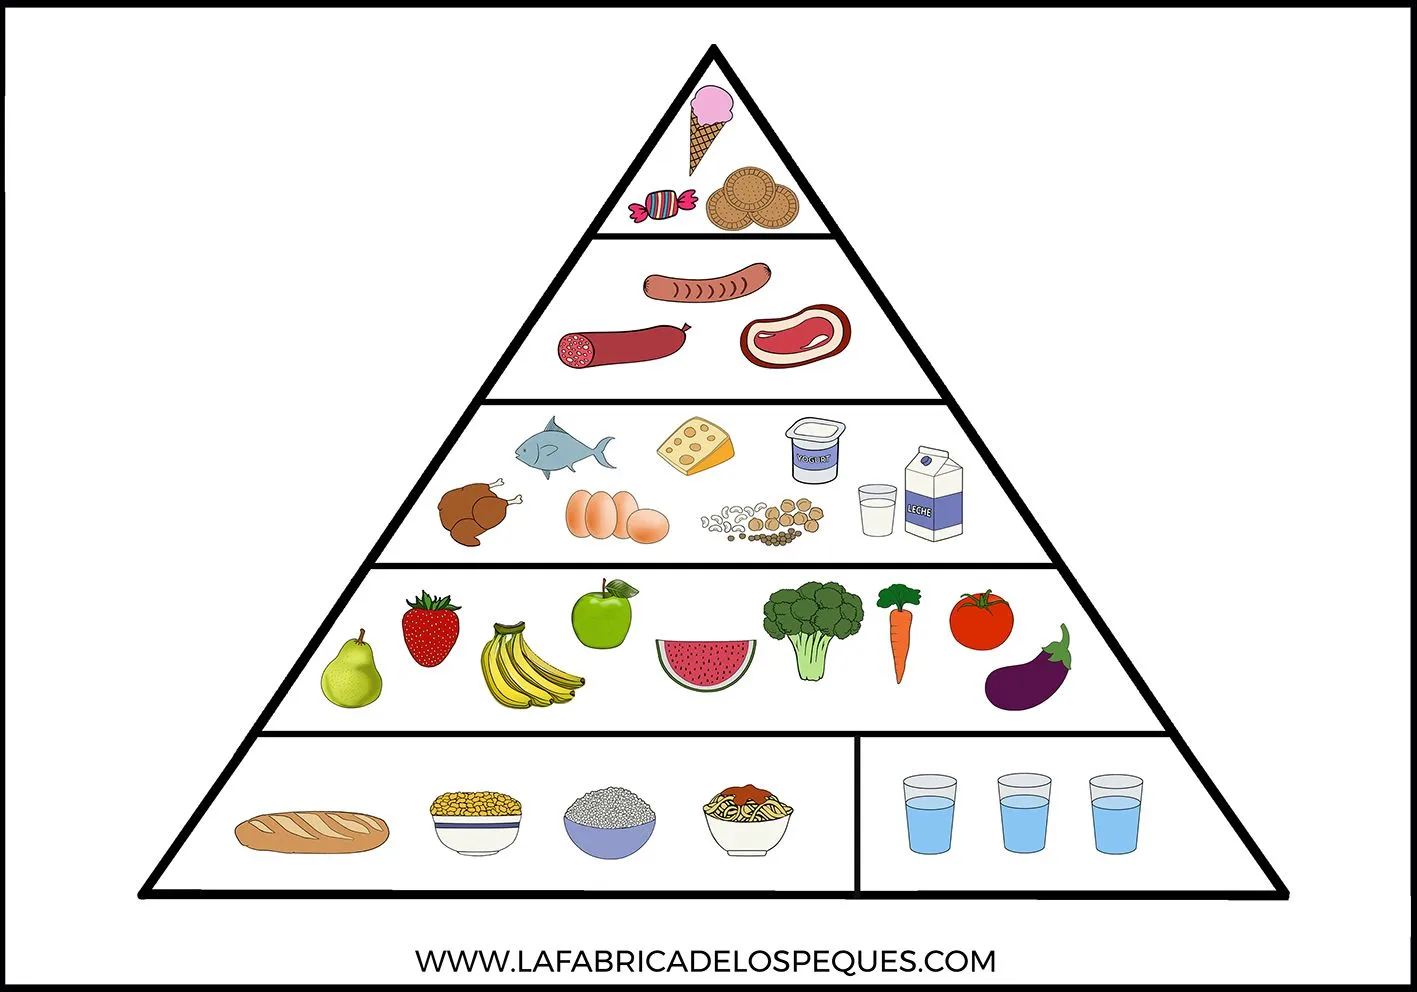 Pirámide alimentaria imprimible, moldes de alimentos y manualidad infantil  de frigorífico. - La fábrica de los peques